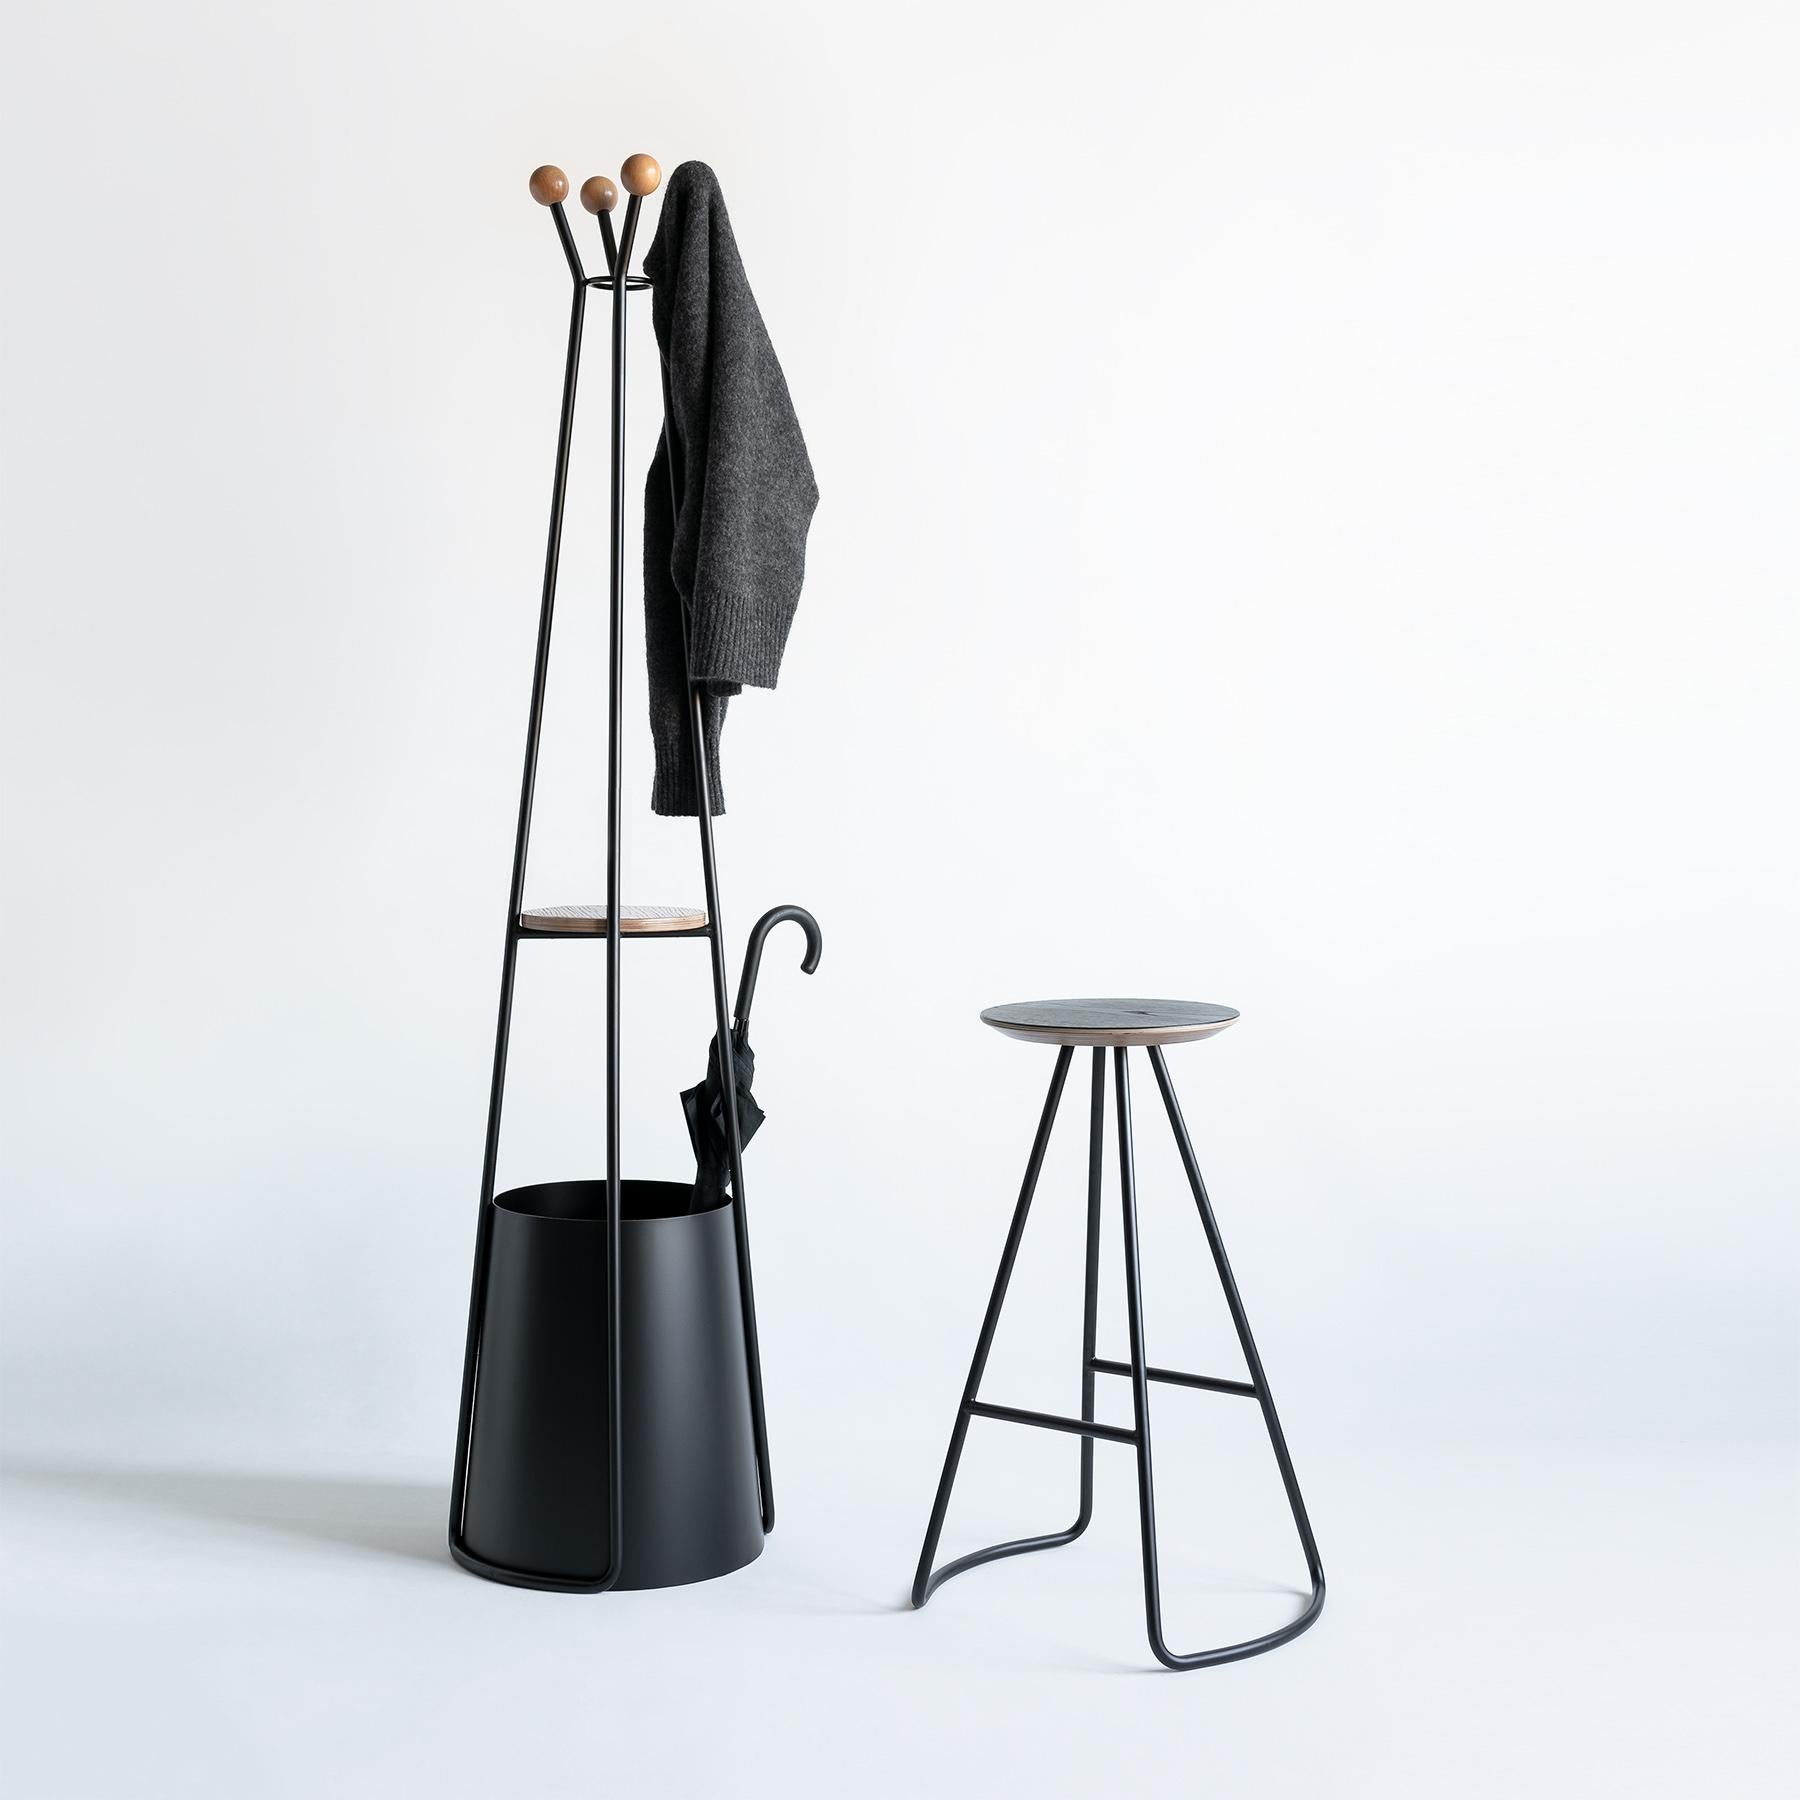 Der Sama-Garderobenständer ist Teil der Sama-Kollektion, die Funktionalität durch einfache, aber markante und skulpturale Formen bietet, die ihrer Umgebung einen einzigartigen und eleganten Touch verleihen.

Inspiriert von der Poesie der